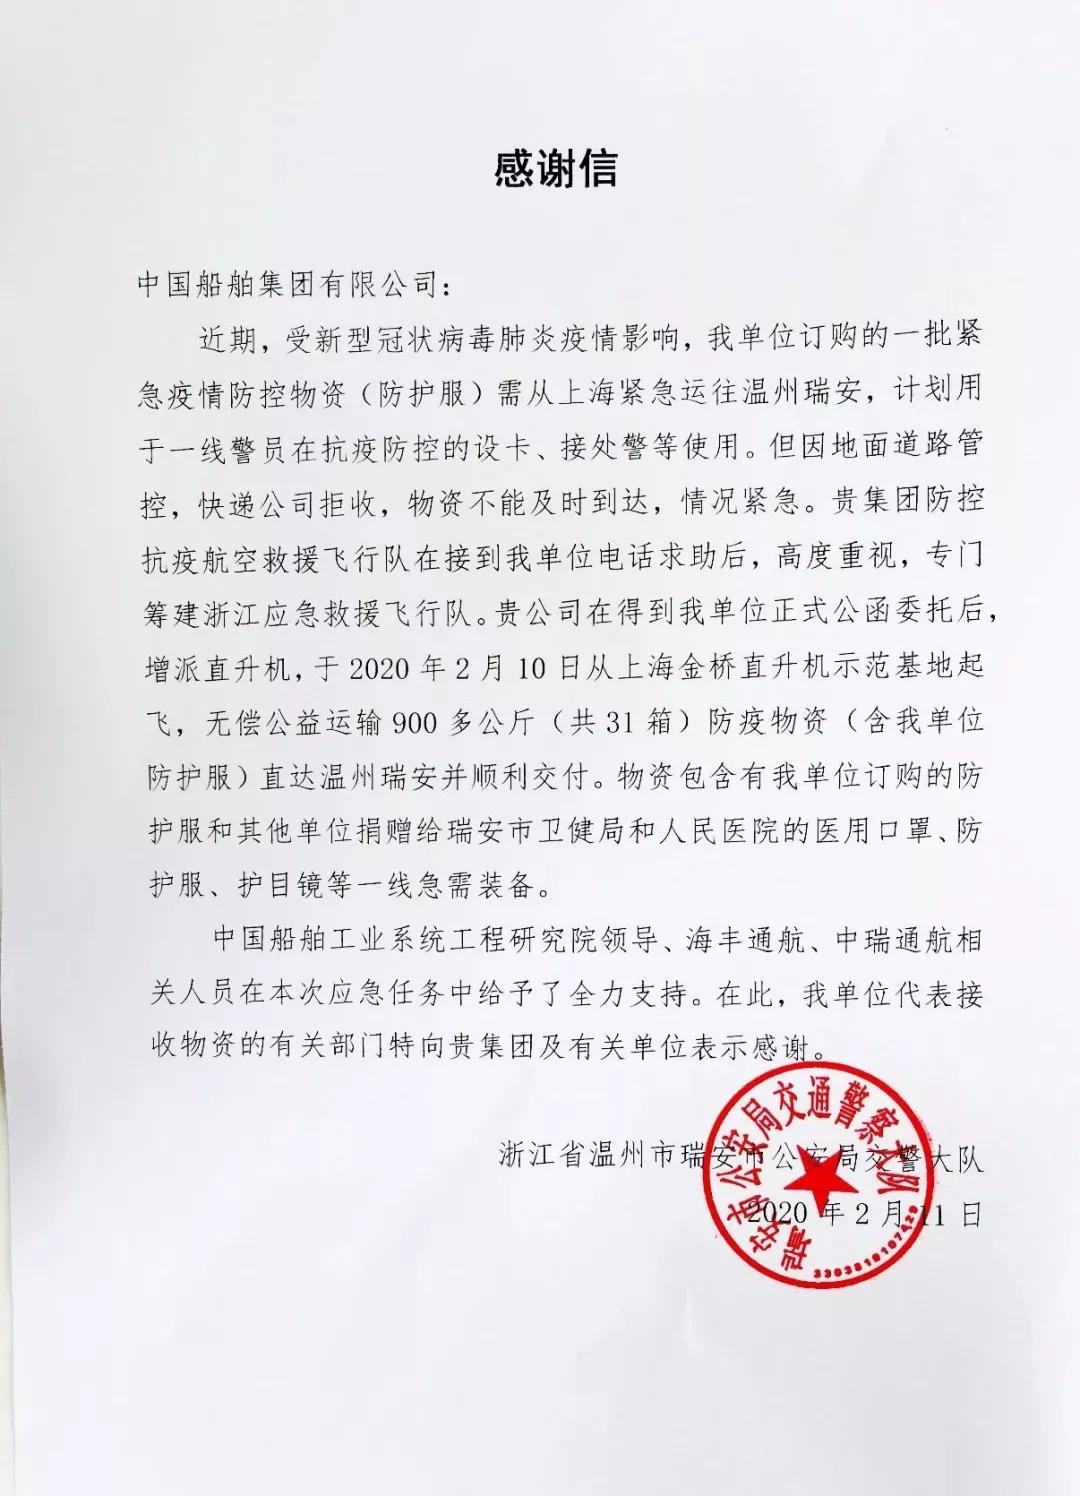 中国船舶防控抗疫航空救援队直飞宜昌、温州